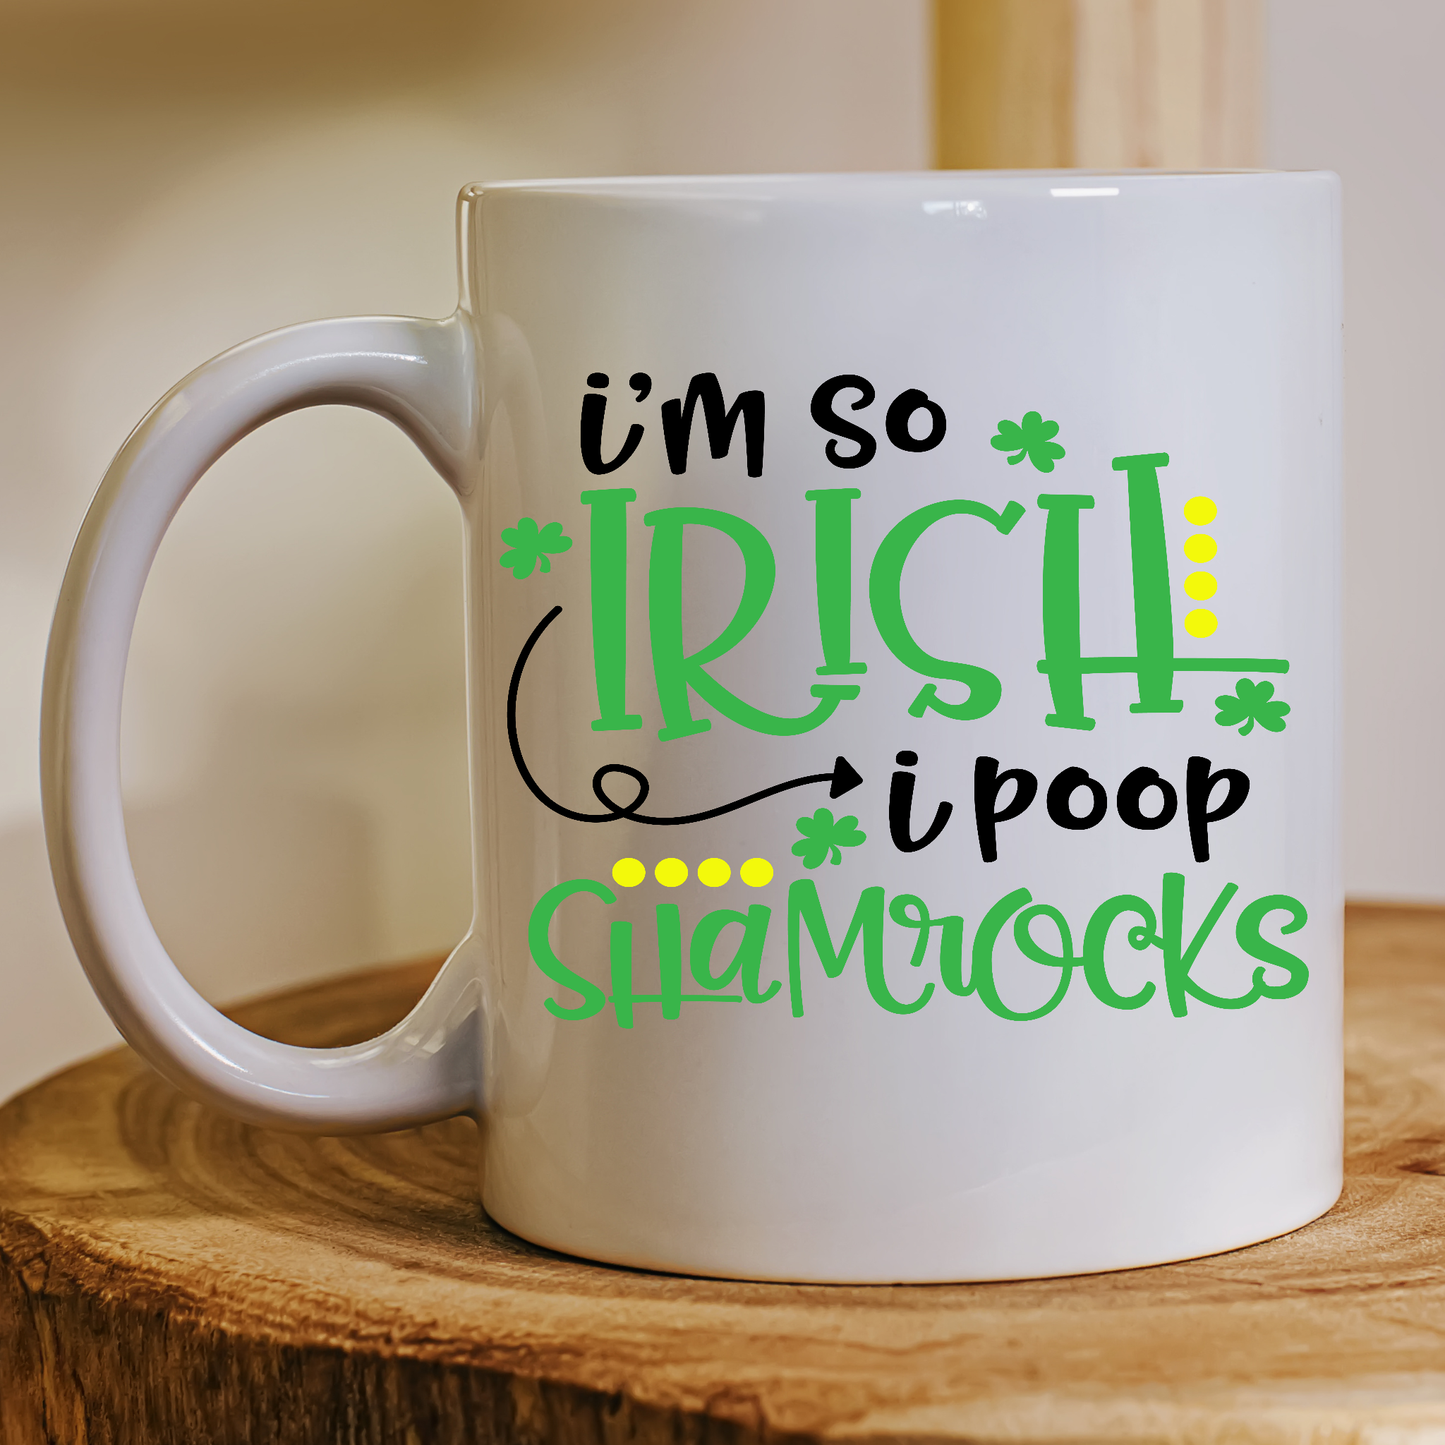 I'm so irish i poop shamrocks st Patricks day mug - Premium mugs from Lees Krazy Teez - Just $24.95! Shop now at Lees Krazy Teez